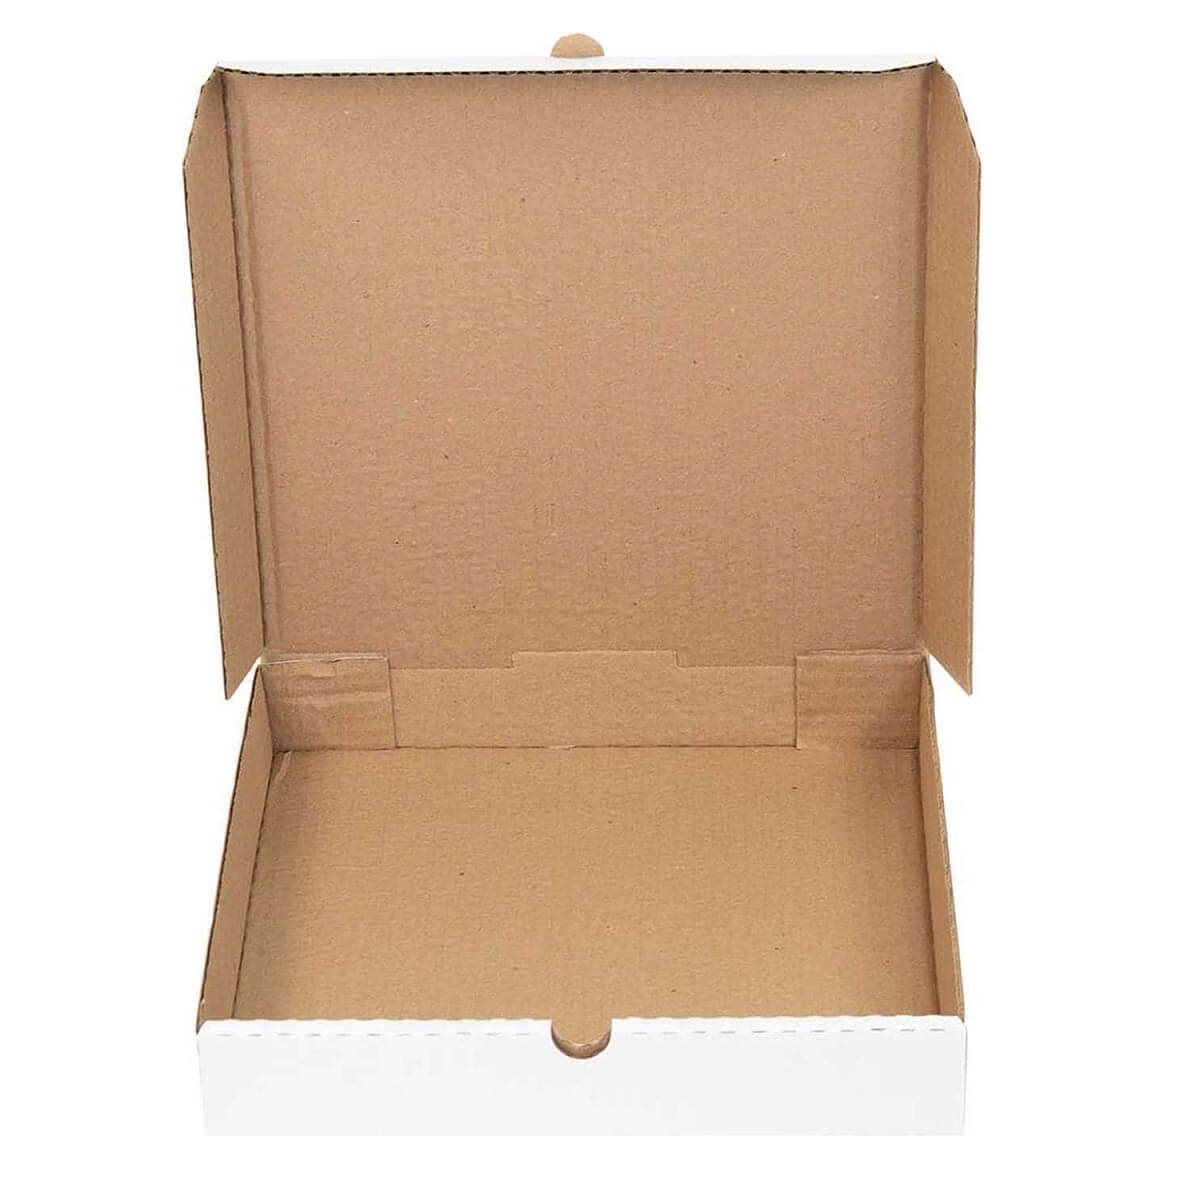 Коробка для пиццы 250x250x40 мм белая